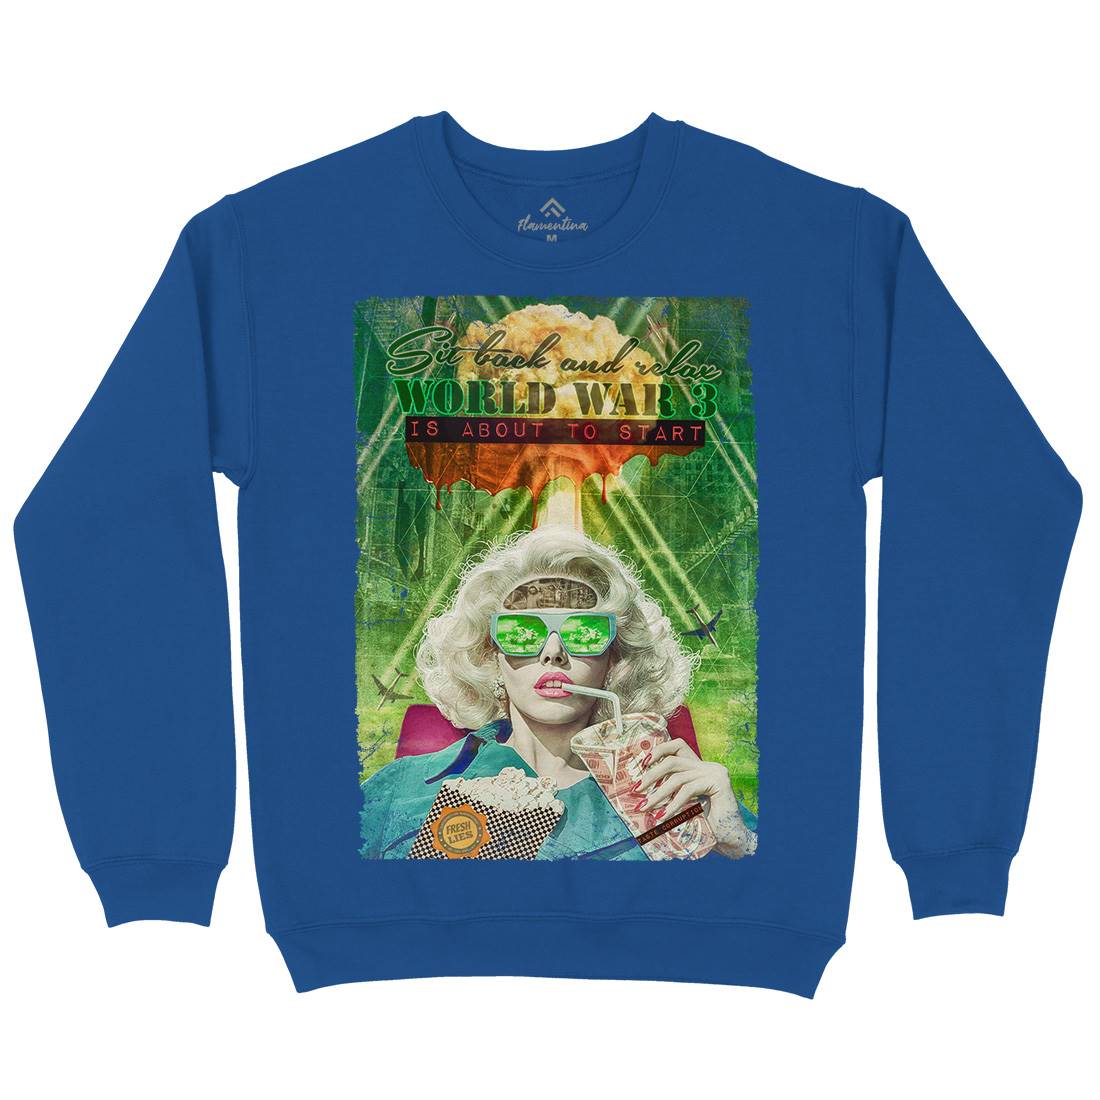 Ww3 Kids Crew Neck Sweatshirt Illuminati A944